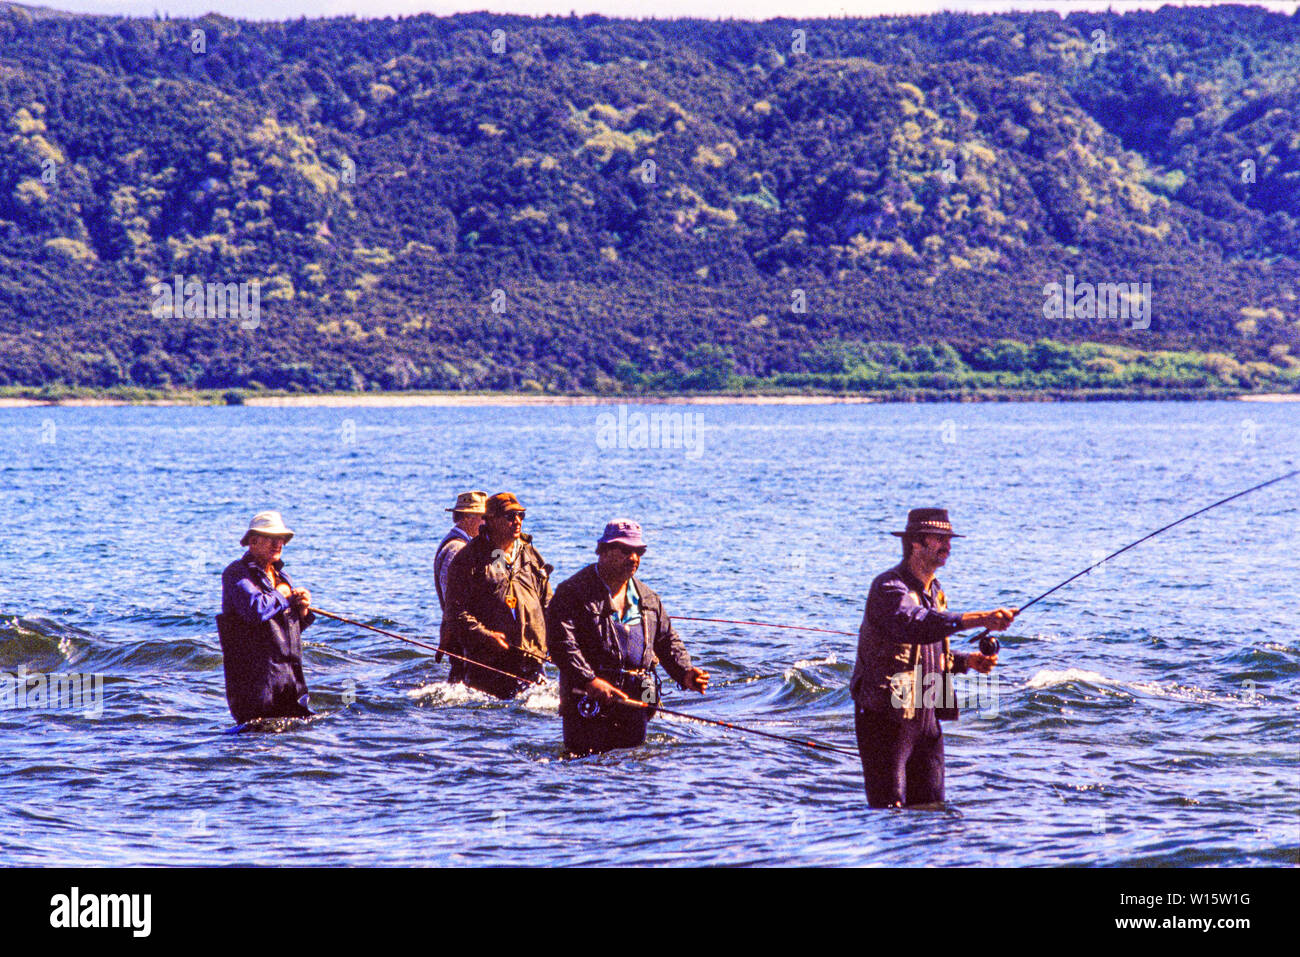 Nueva Zelanda, el norte de la isla. Hombres pescando en el Lago Taupo, una nota de pesca de truchas con las existencias de la introducción de la trucha arco iris y marrón. Foto tomada el 19 de noviembre Foto de stock